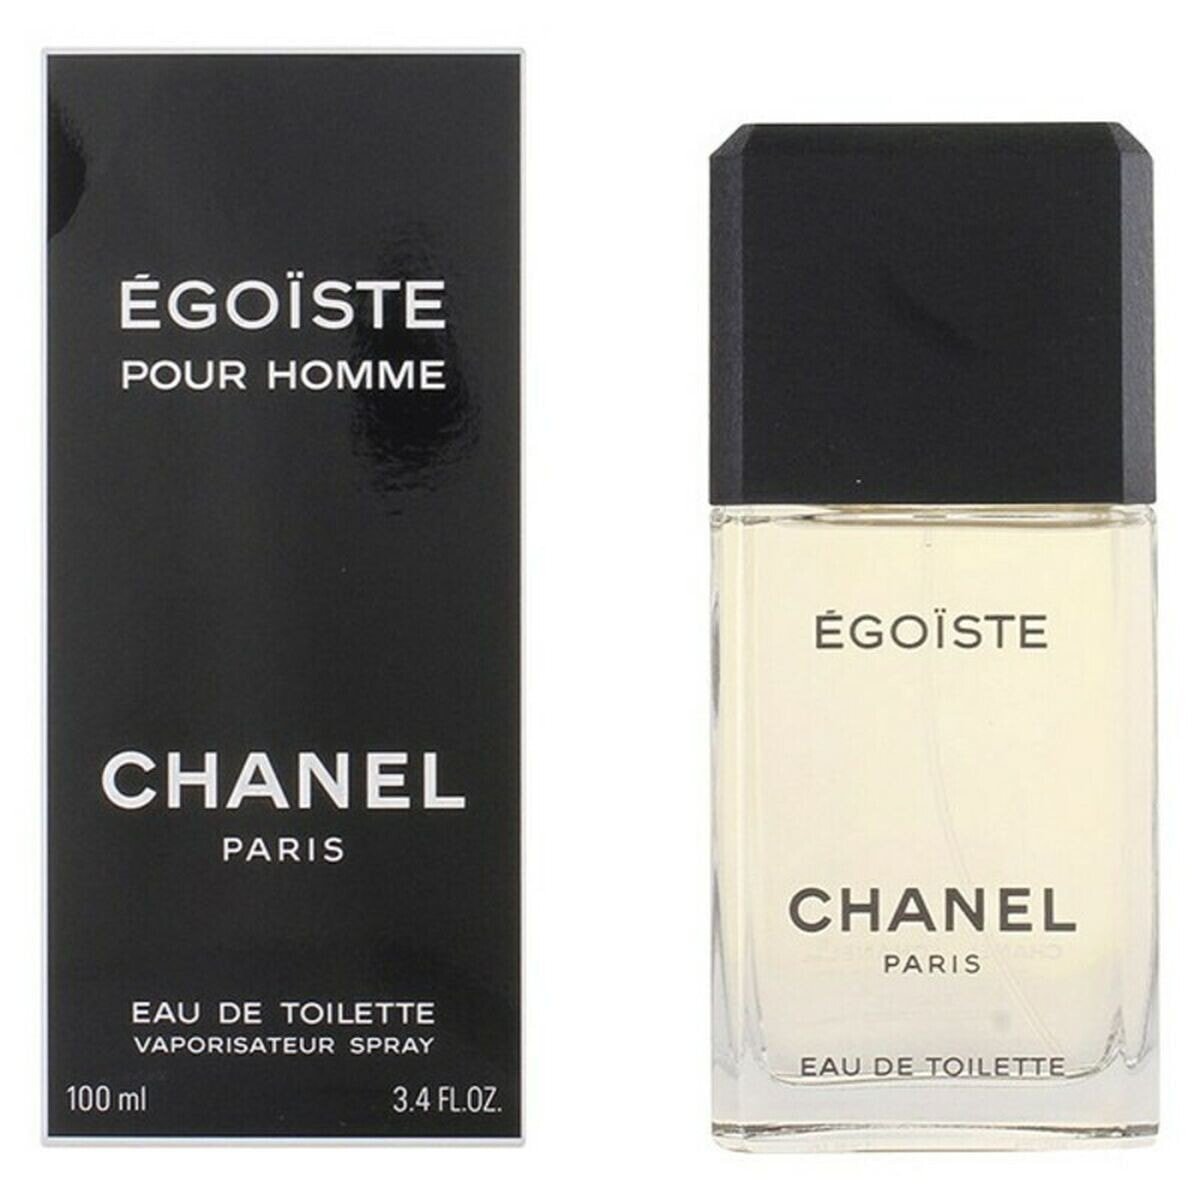 Шанель Eau de Toilette pour homme. Chanel Platinum Egoiste pour homme. Chanel Egoiste. Chanel Egoiste  men.